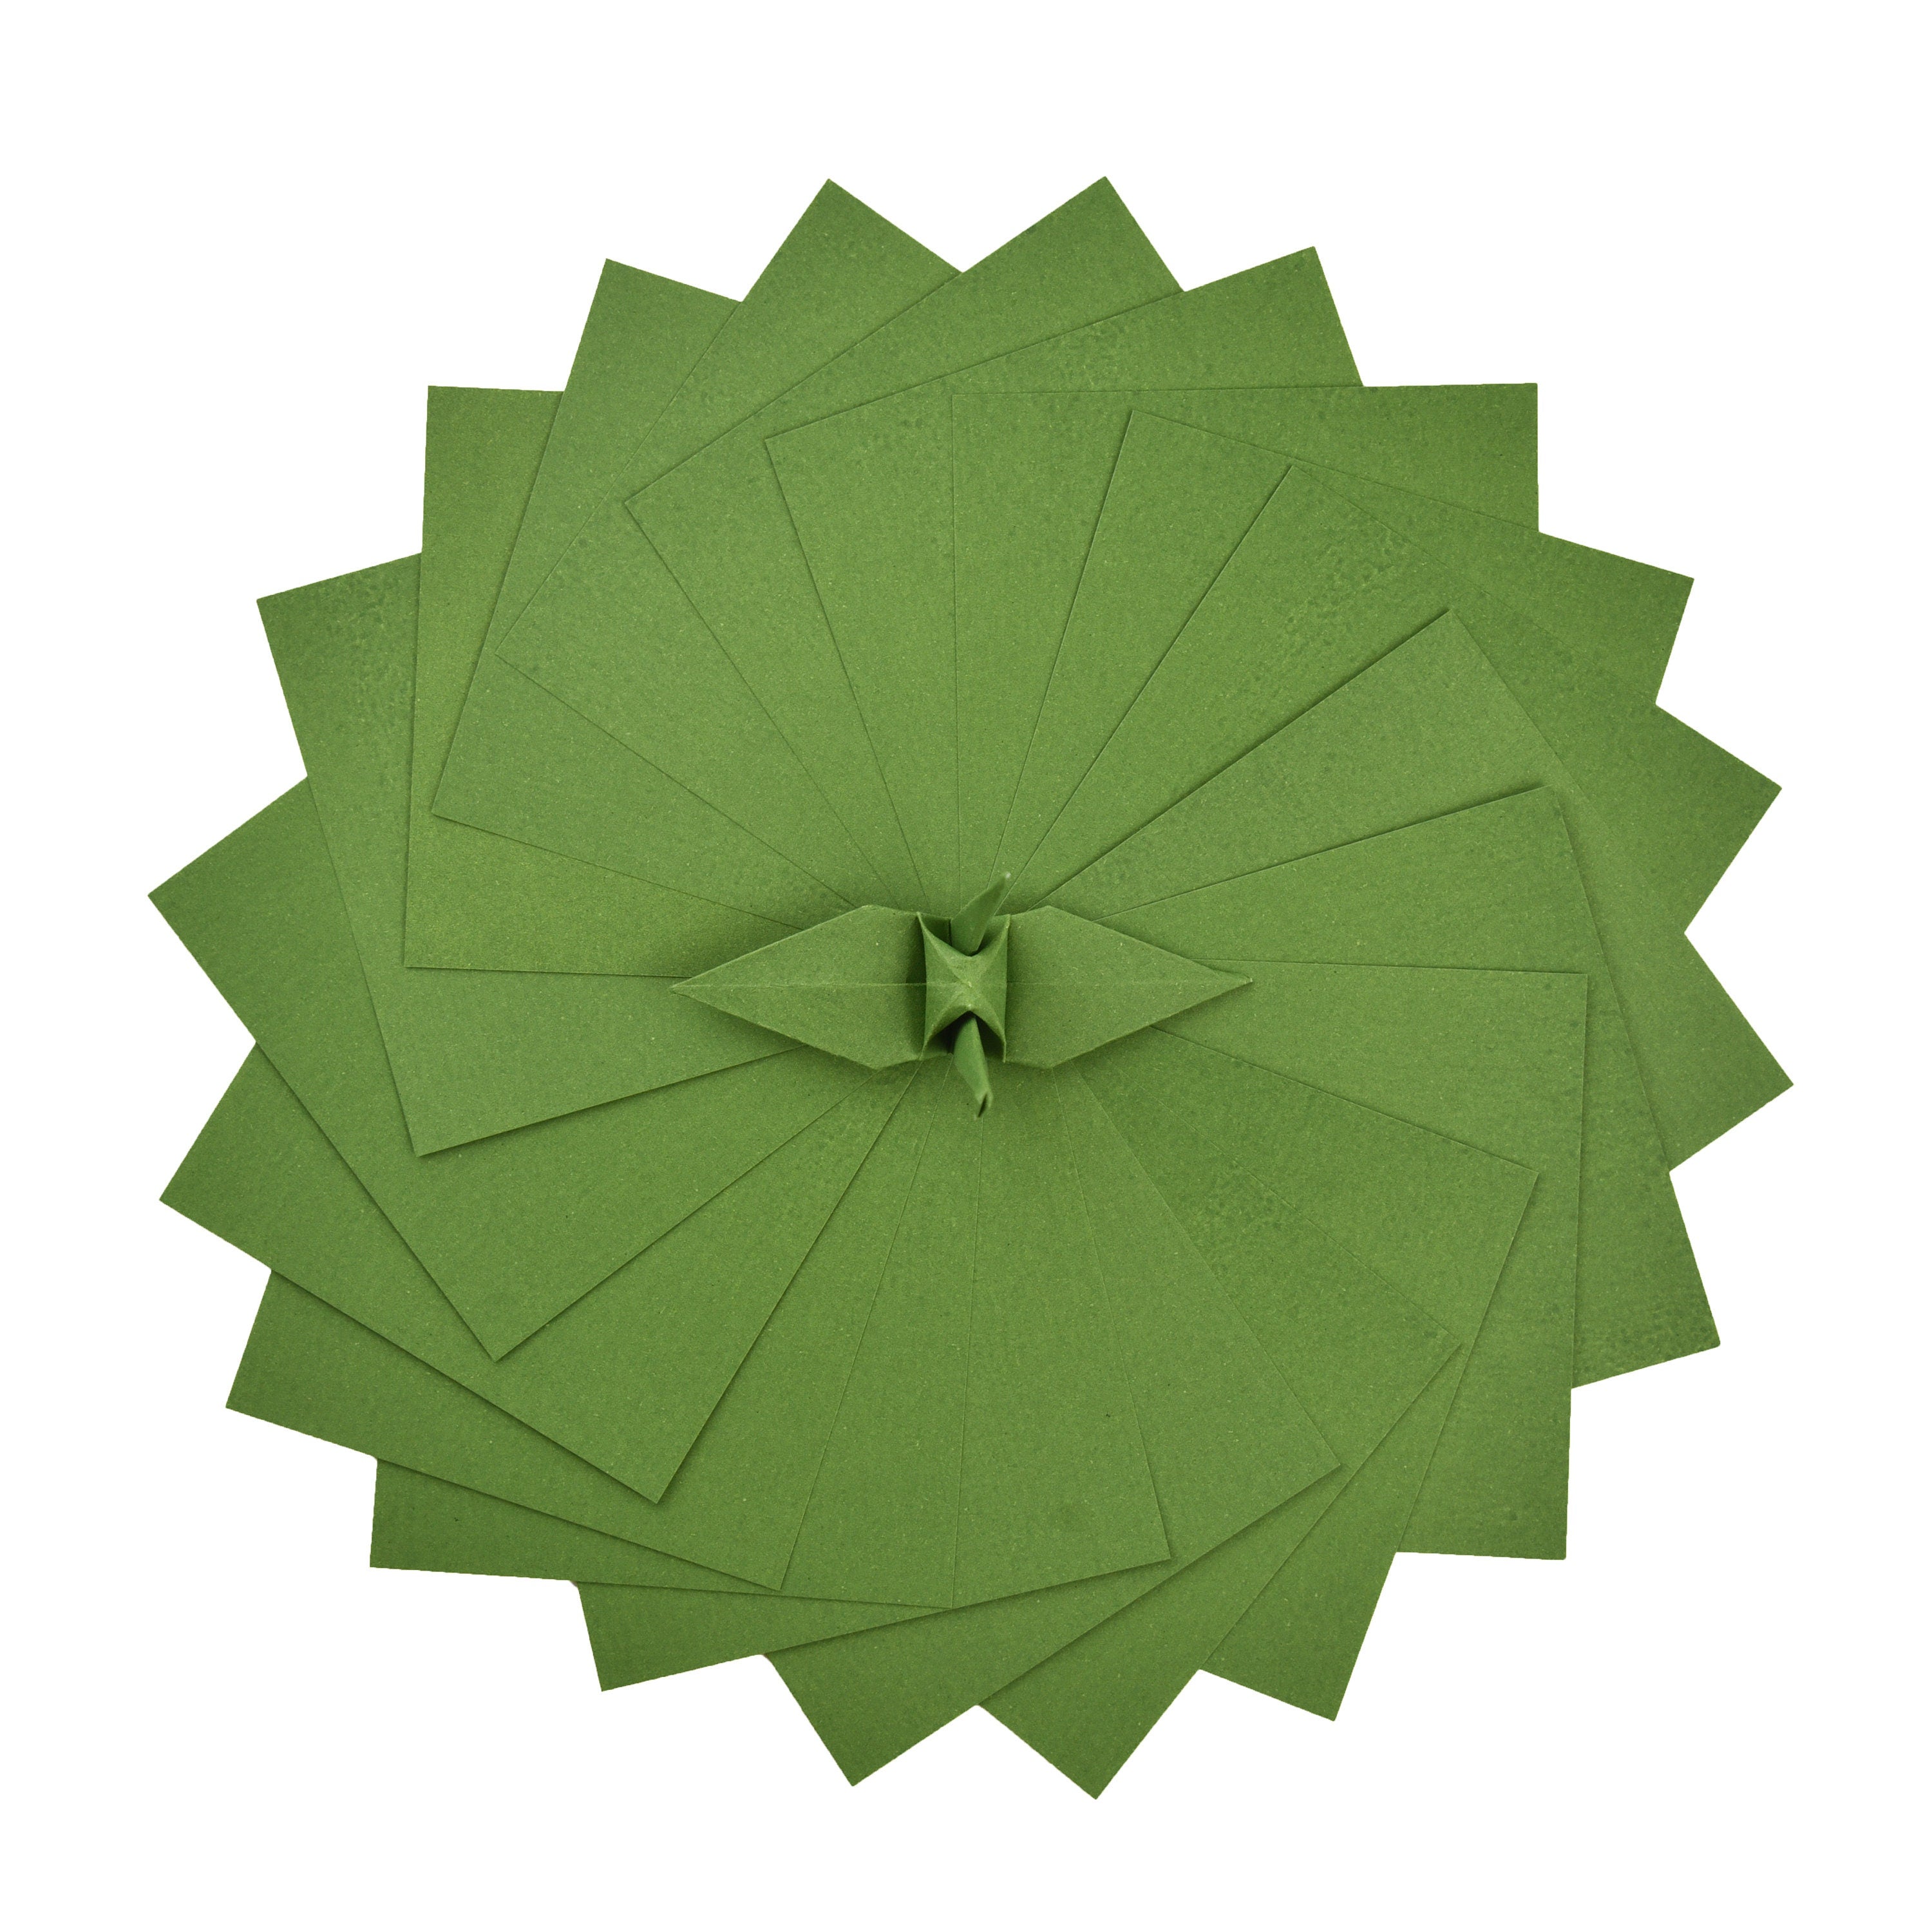 100 Hojas de Papel Origami - 3x3 pulgadas - Paquete de Papel Cuadrado para Plegar, Grullas de Origami y Decoración - S23